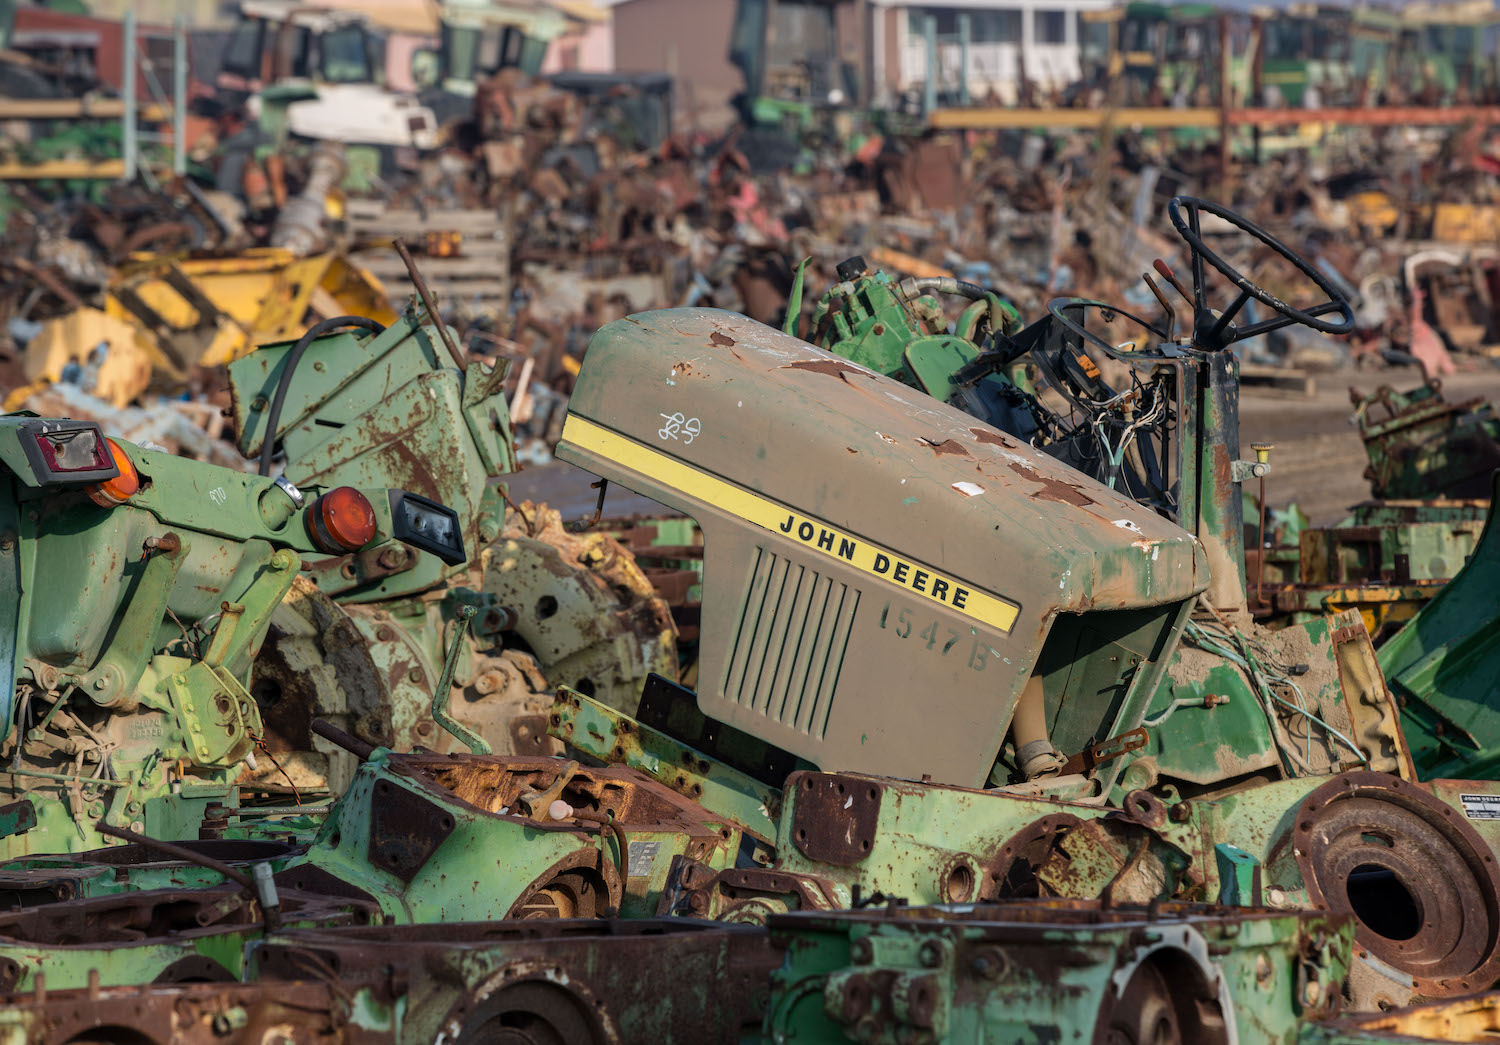 A junkyard showing an old broken John Deere tractor. March 2022